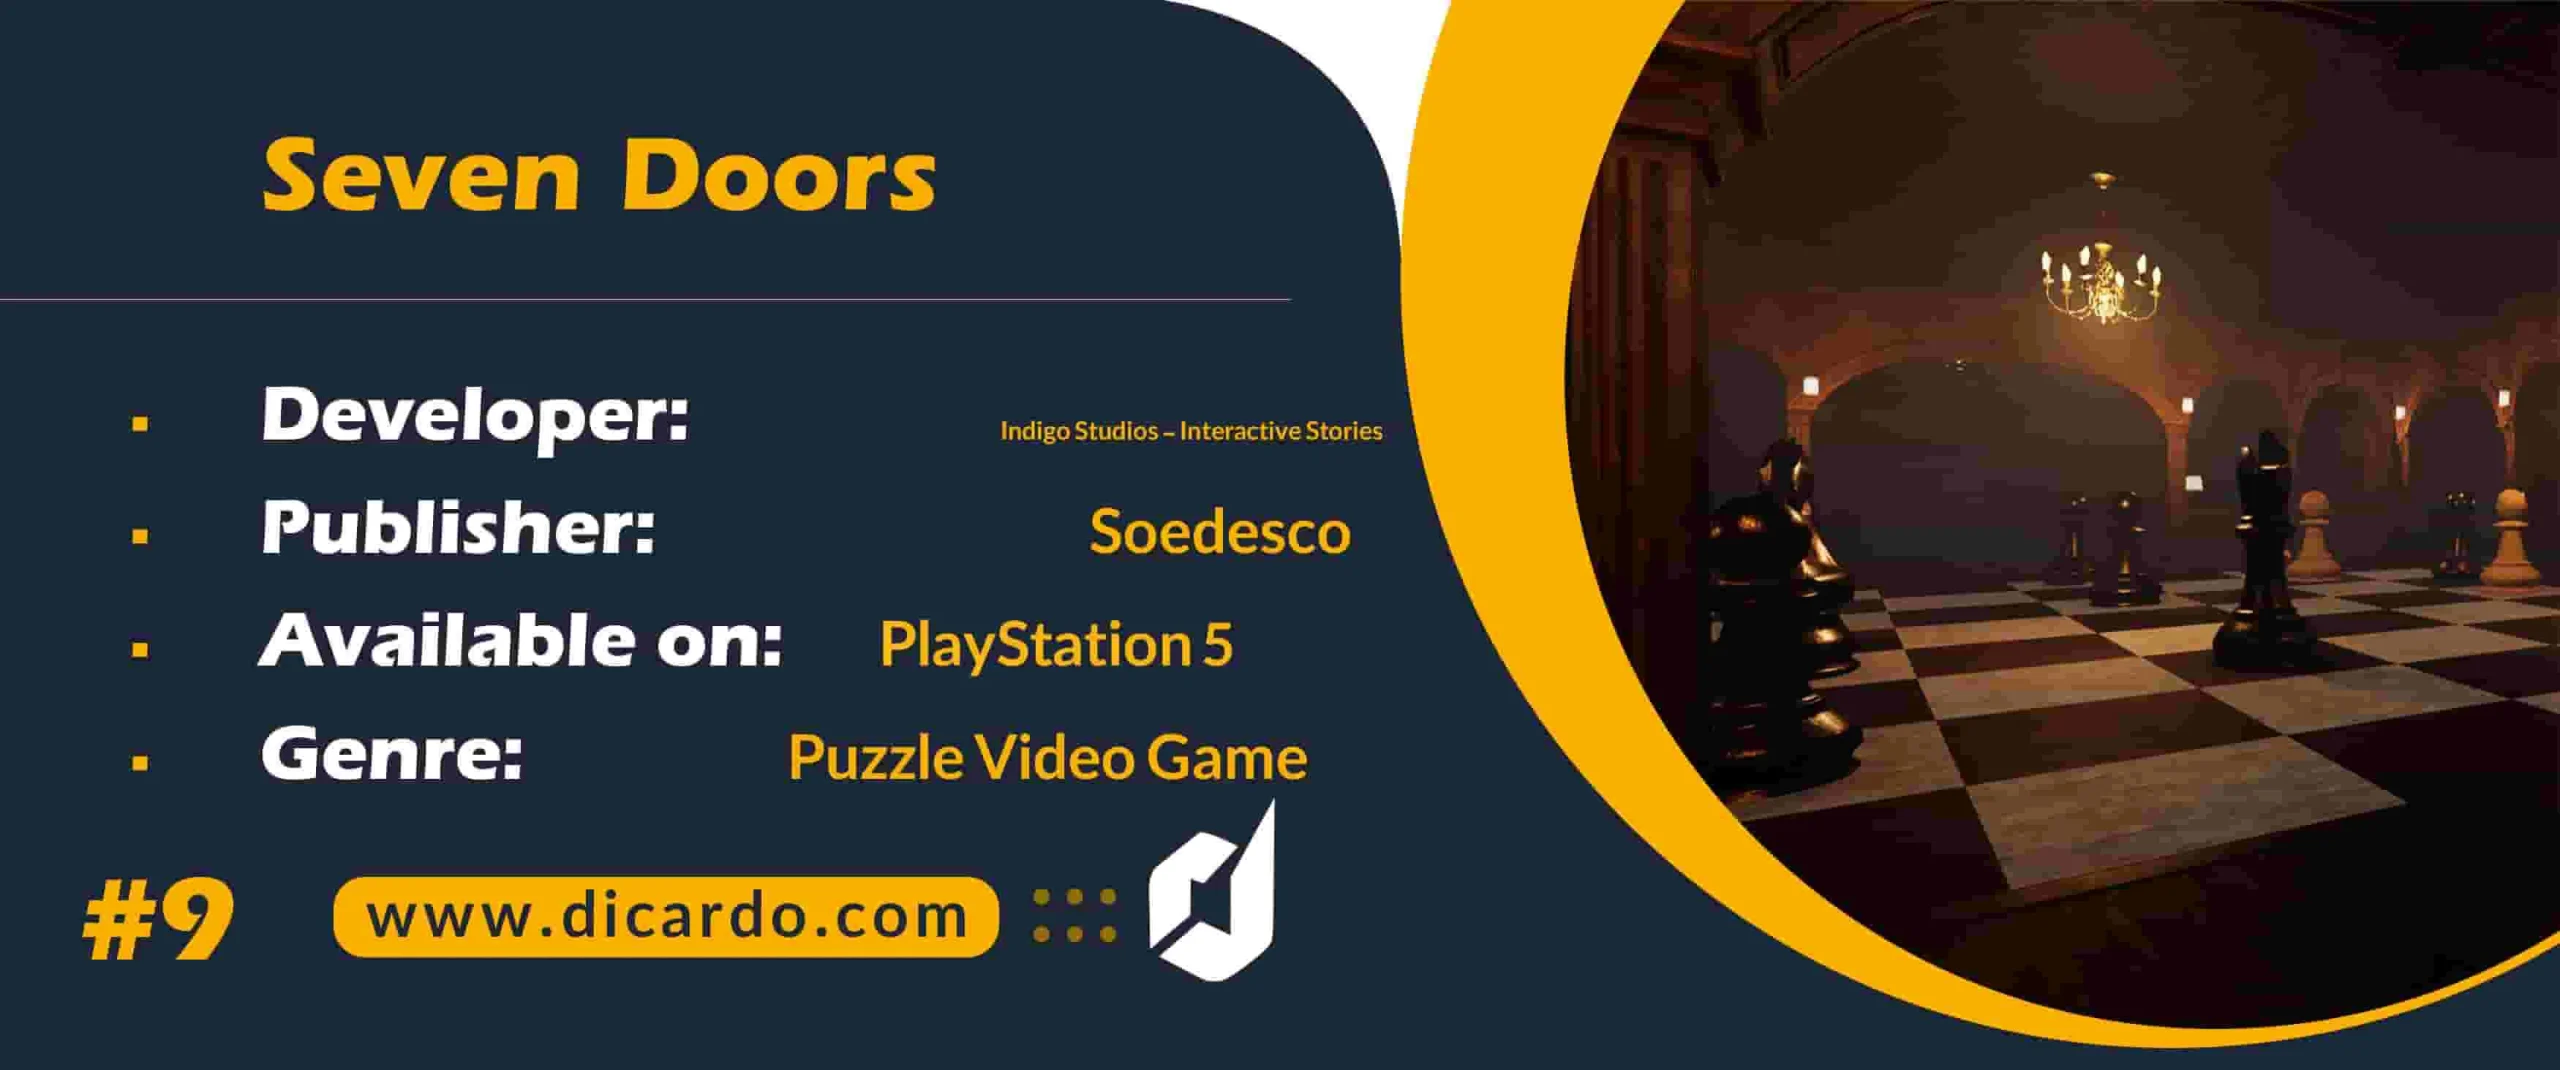 #9 سون دورز Seven Doors از بازیهای پلی استیشن 5 با هفت در چالش برانگیز